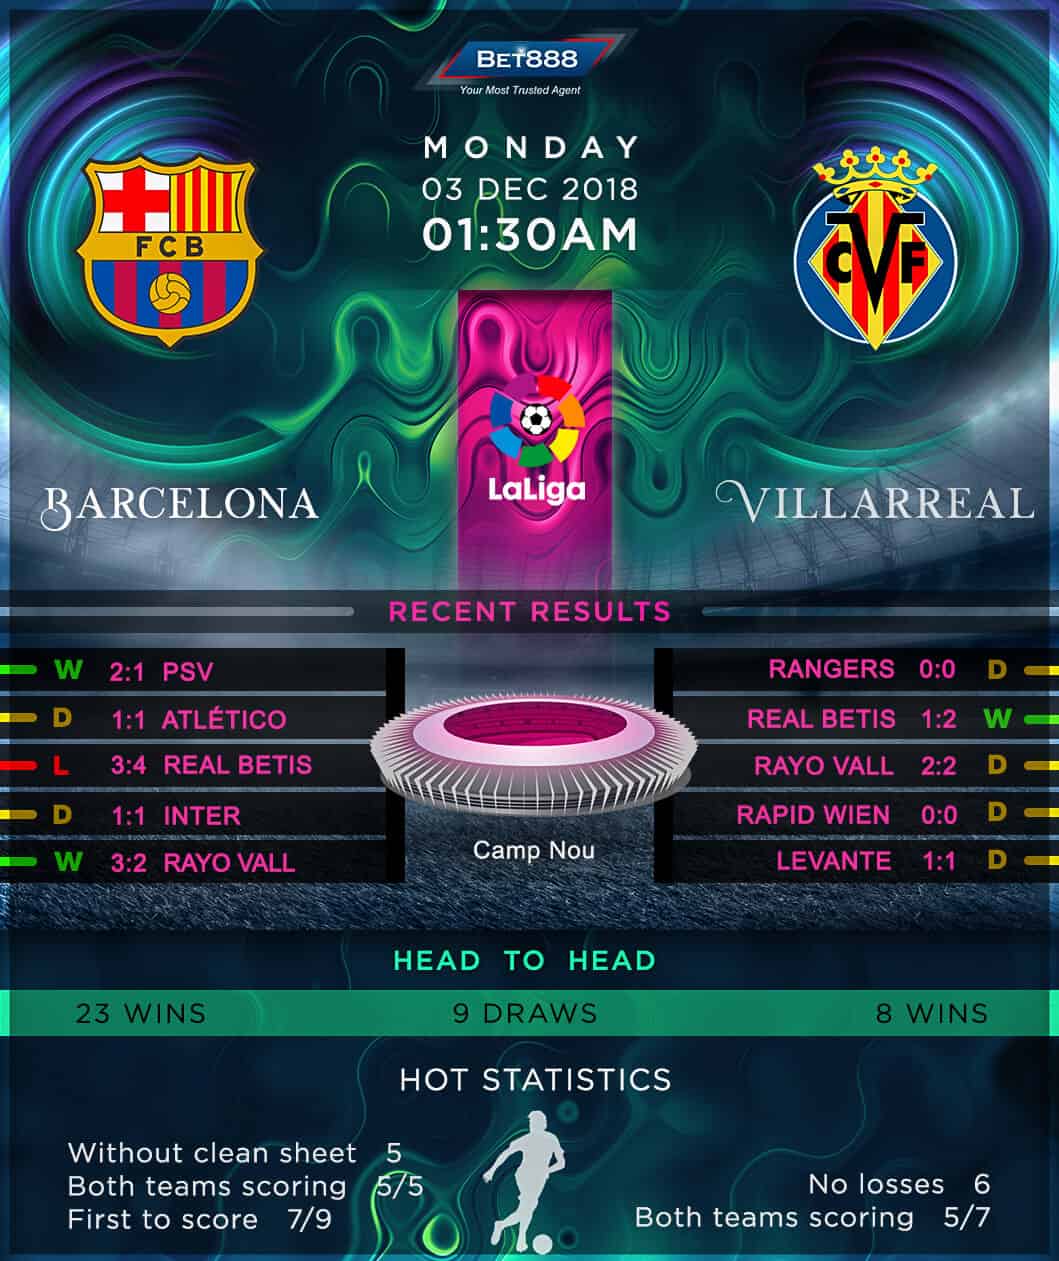 Barcelona vs Villarreal 03/12/18